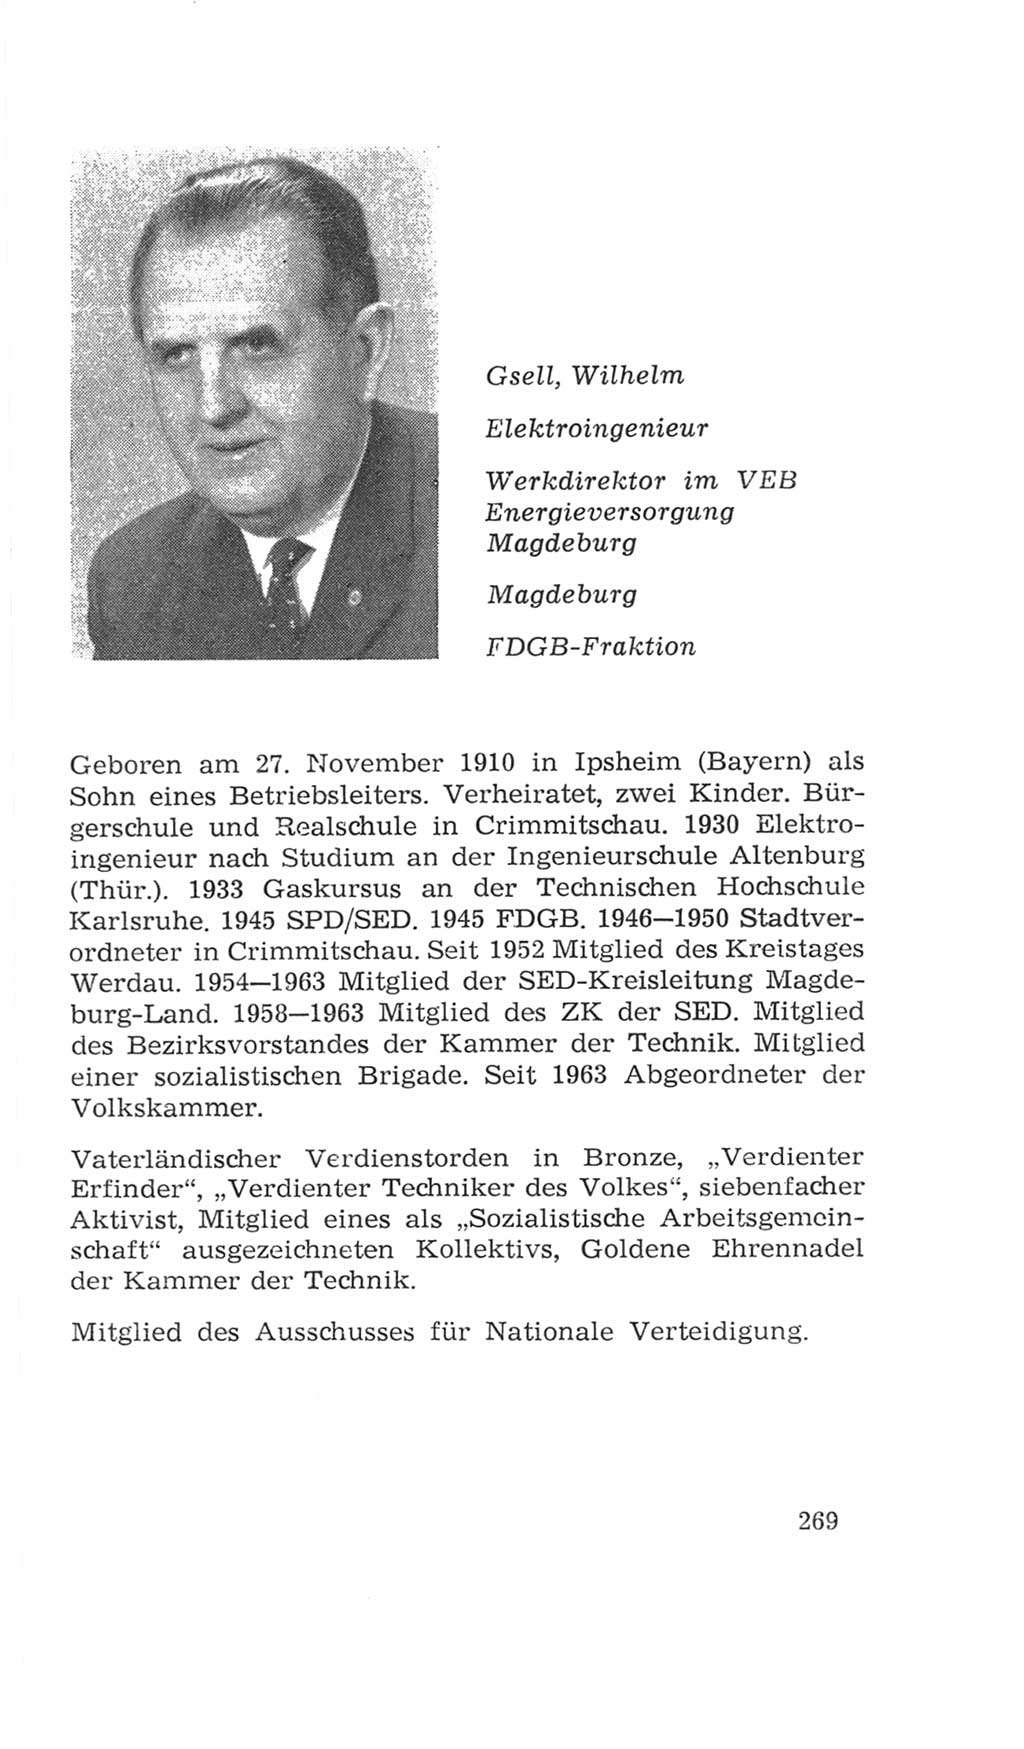 Volkskammer (VK) der Deutschen Demokratischen Republik (DDR), 4. Wahlperiode 1963-1967, Seite 269 (VK. DDR 4. WP. 1963-1967, S. 269)